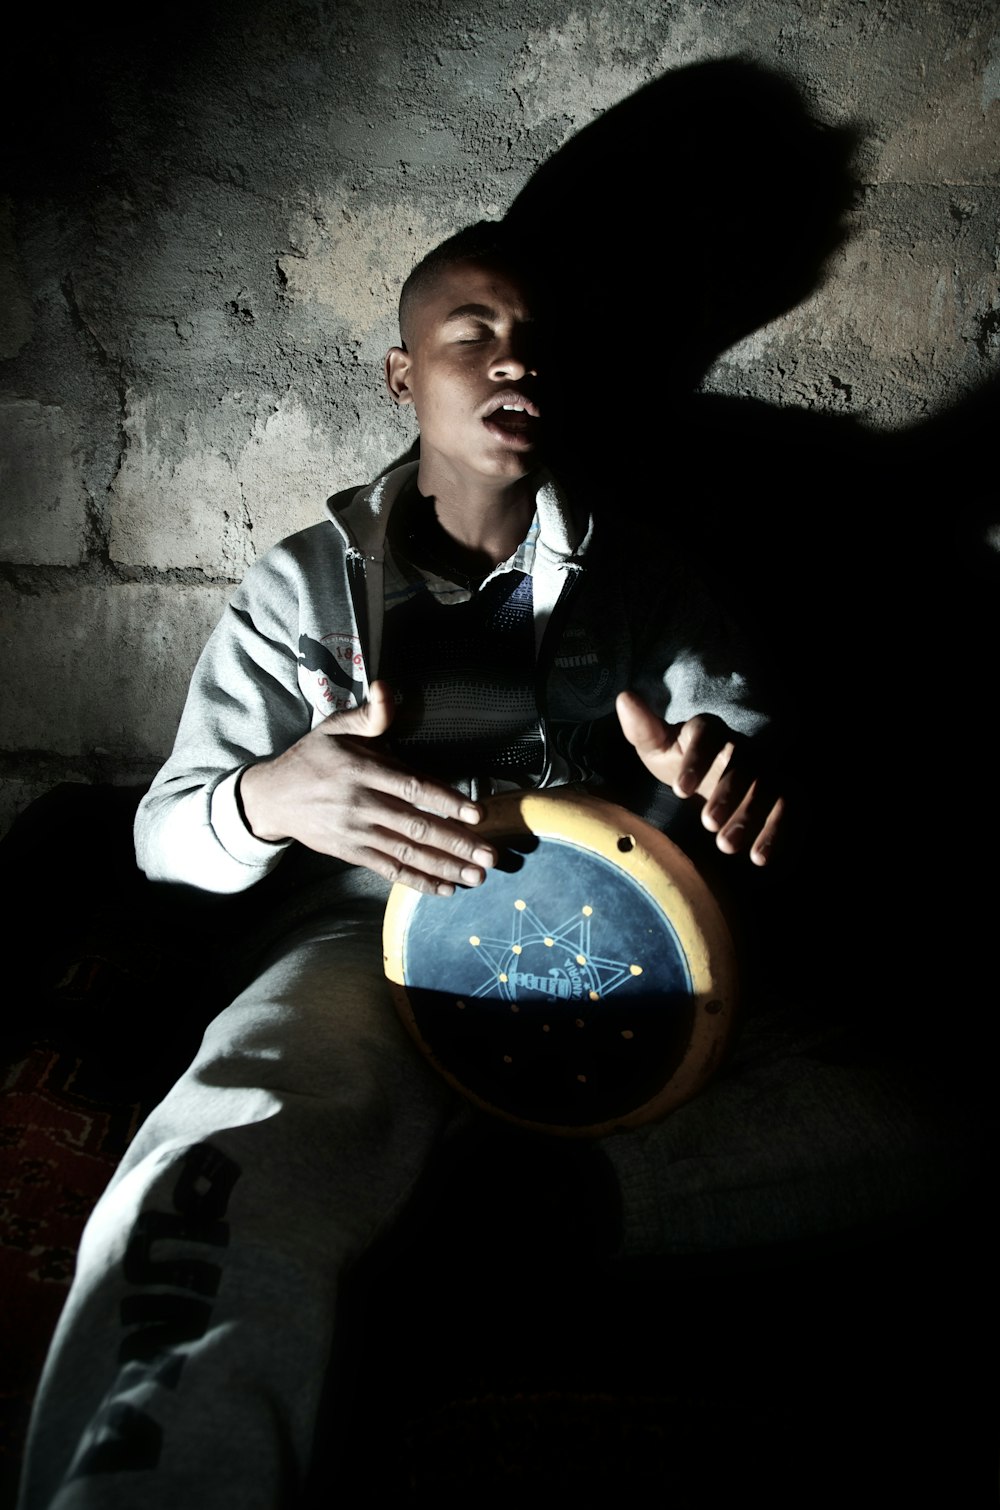 Mann spielt Perkussionsinstrument in der Nähe der Wand